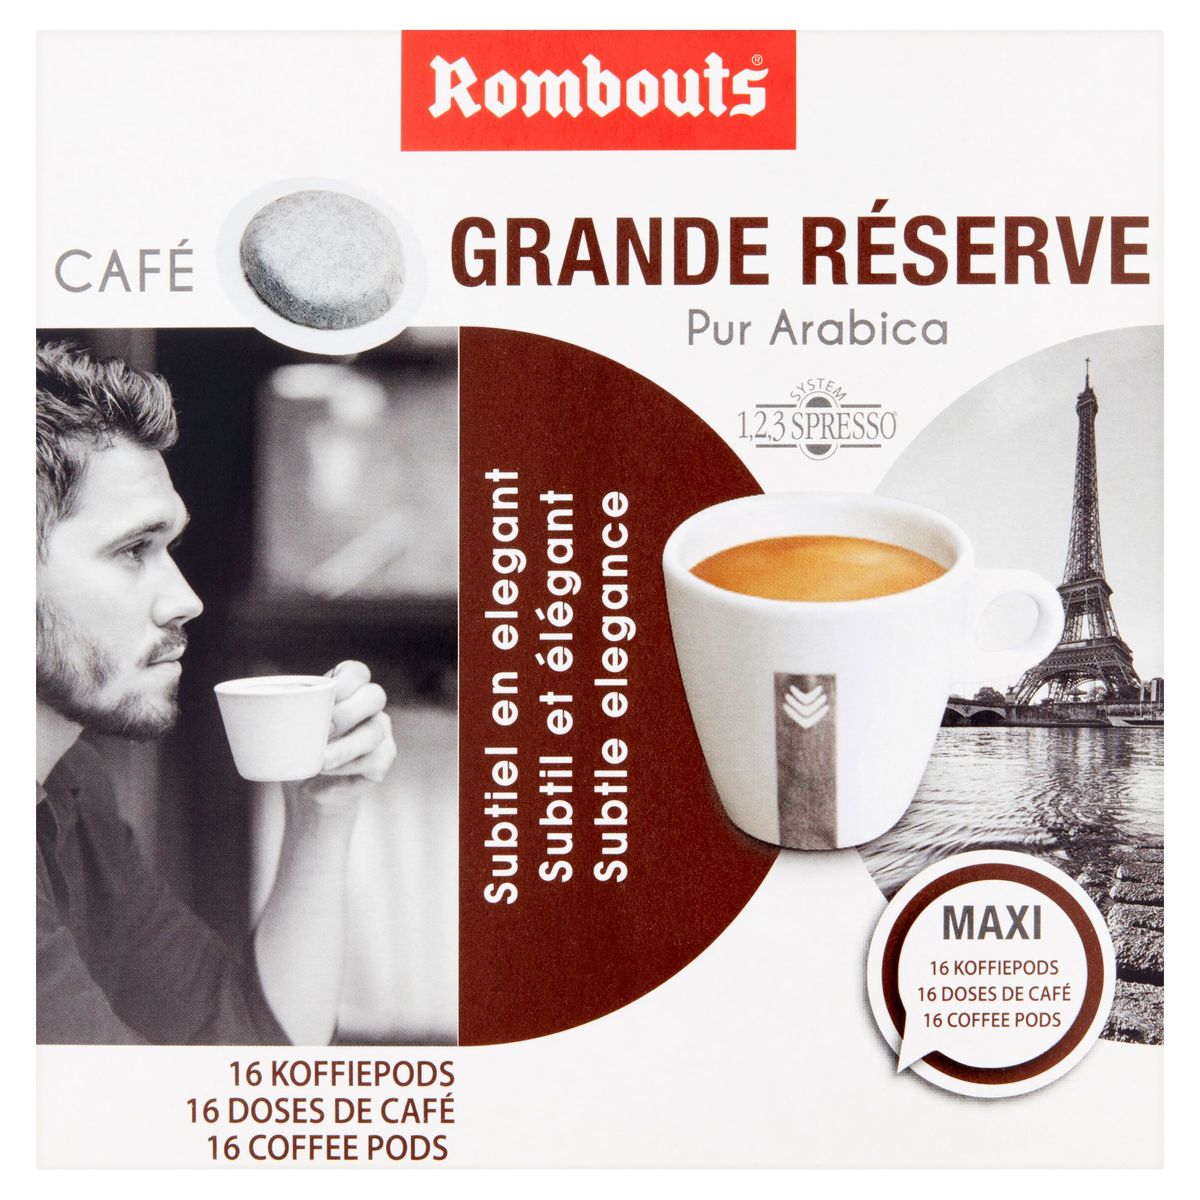 Rombouts Café Grande Réserve Pur Arabica 16 Doses de Café 4 x 4 x 6 g